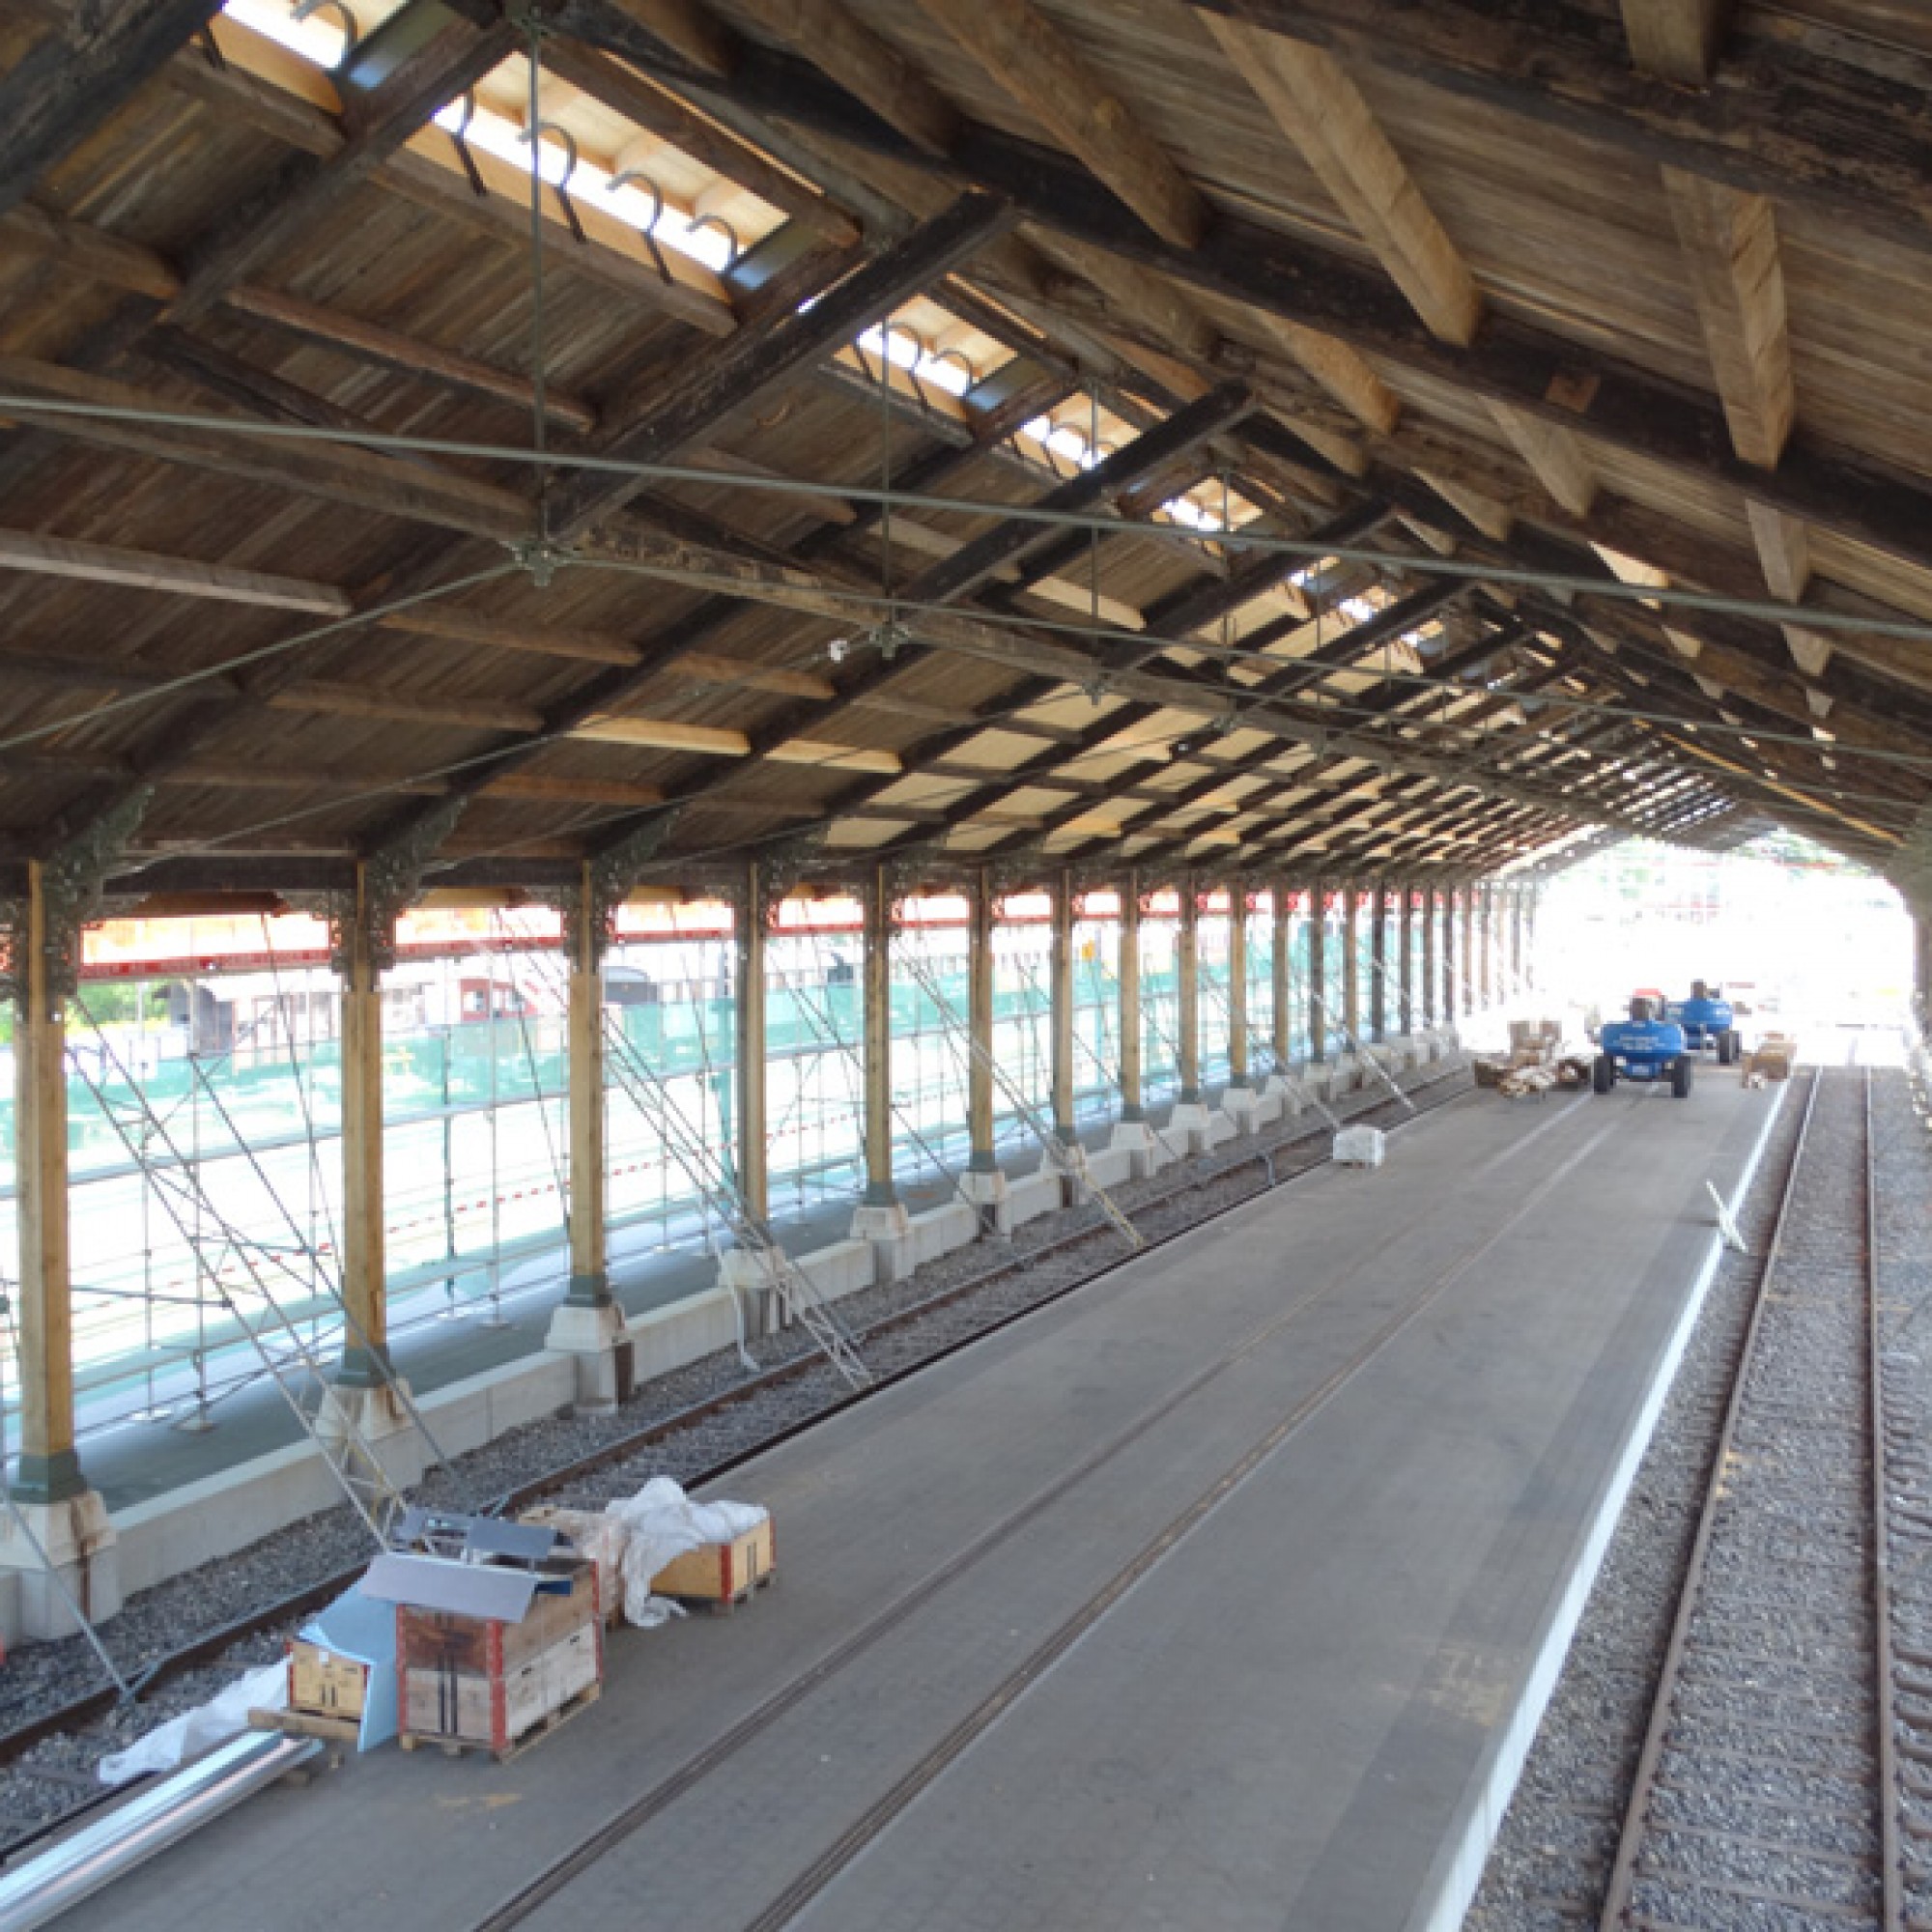 100 Meter lang ist die Halle. Beidseitig werden die Züge eingestellt. (Foto: DVZO)